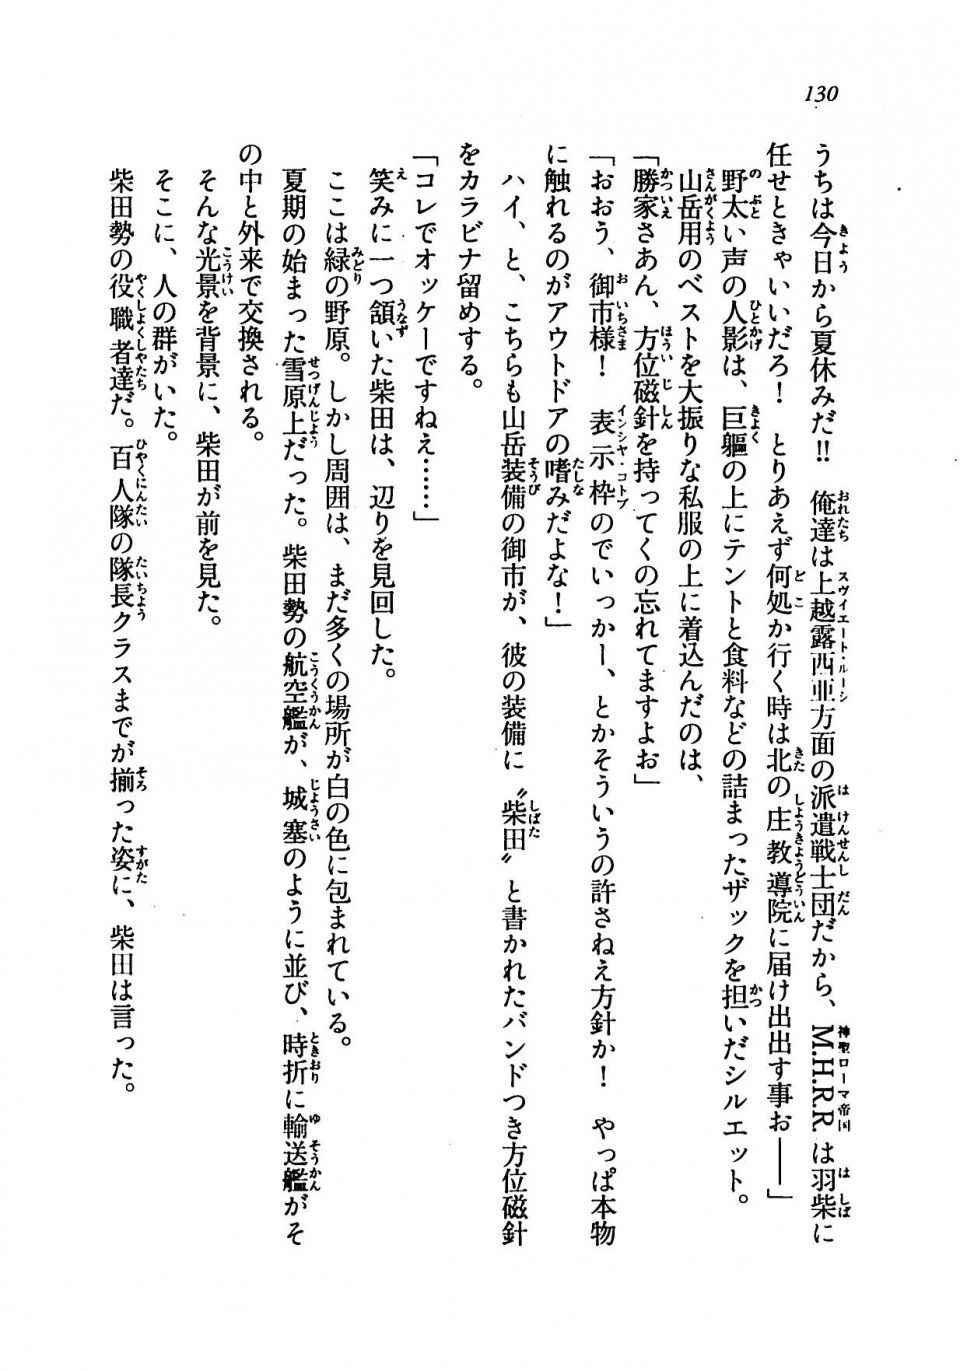 Kyoukai Senjou no Horizon LN Vol 19(8A) - Photo #130